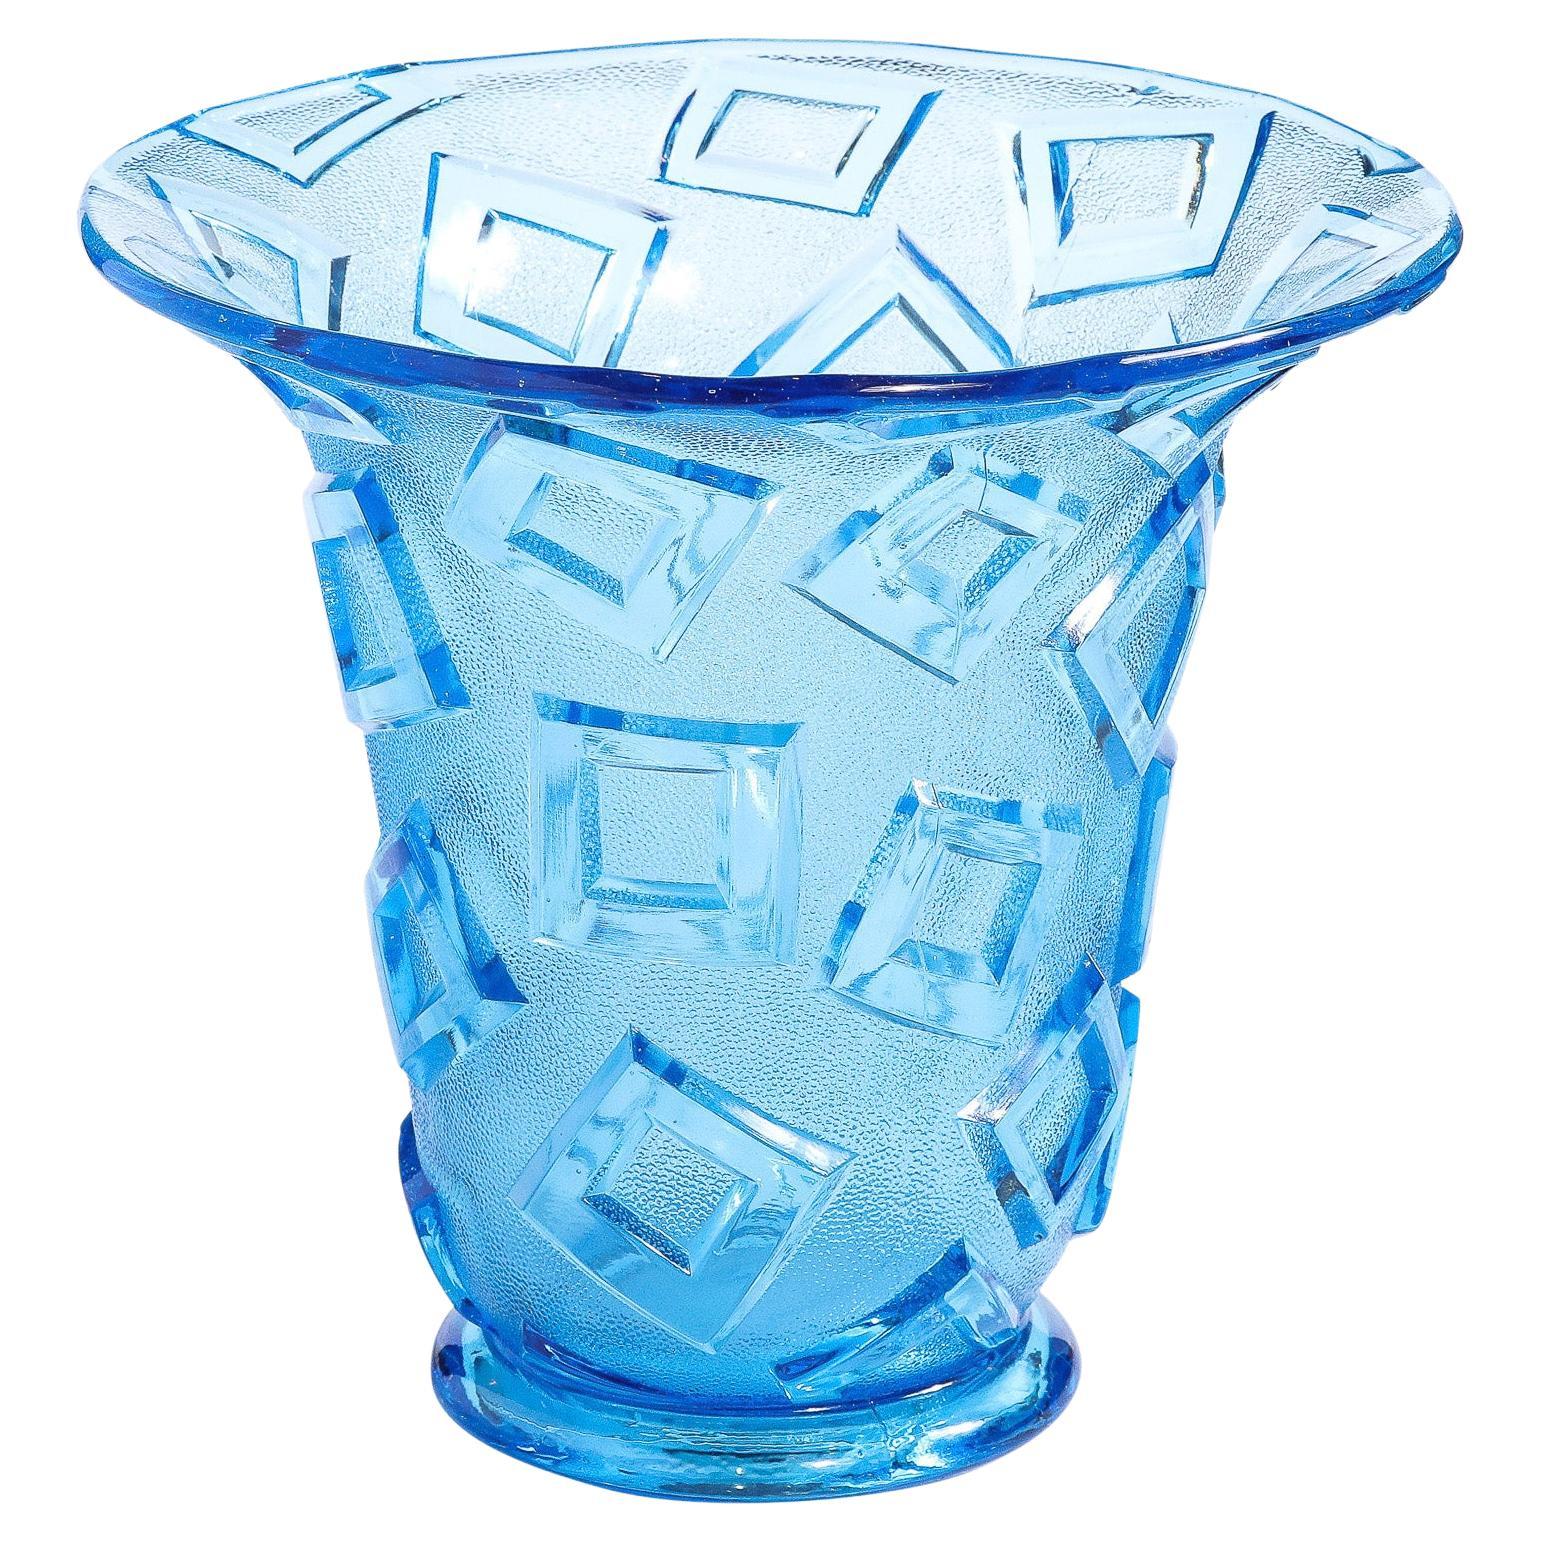 Vase en verre bleu Art Déco avec motifs géométriques translucides en relief 